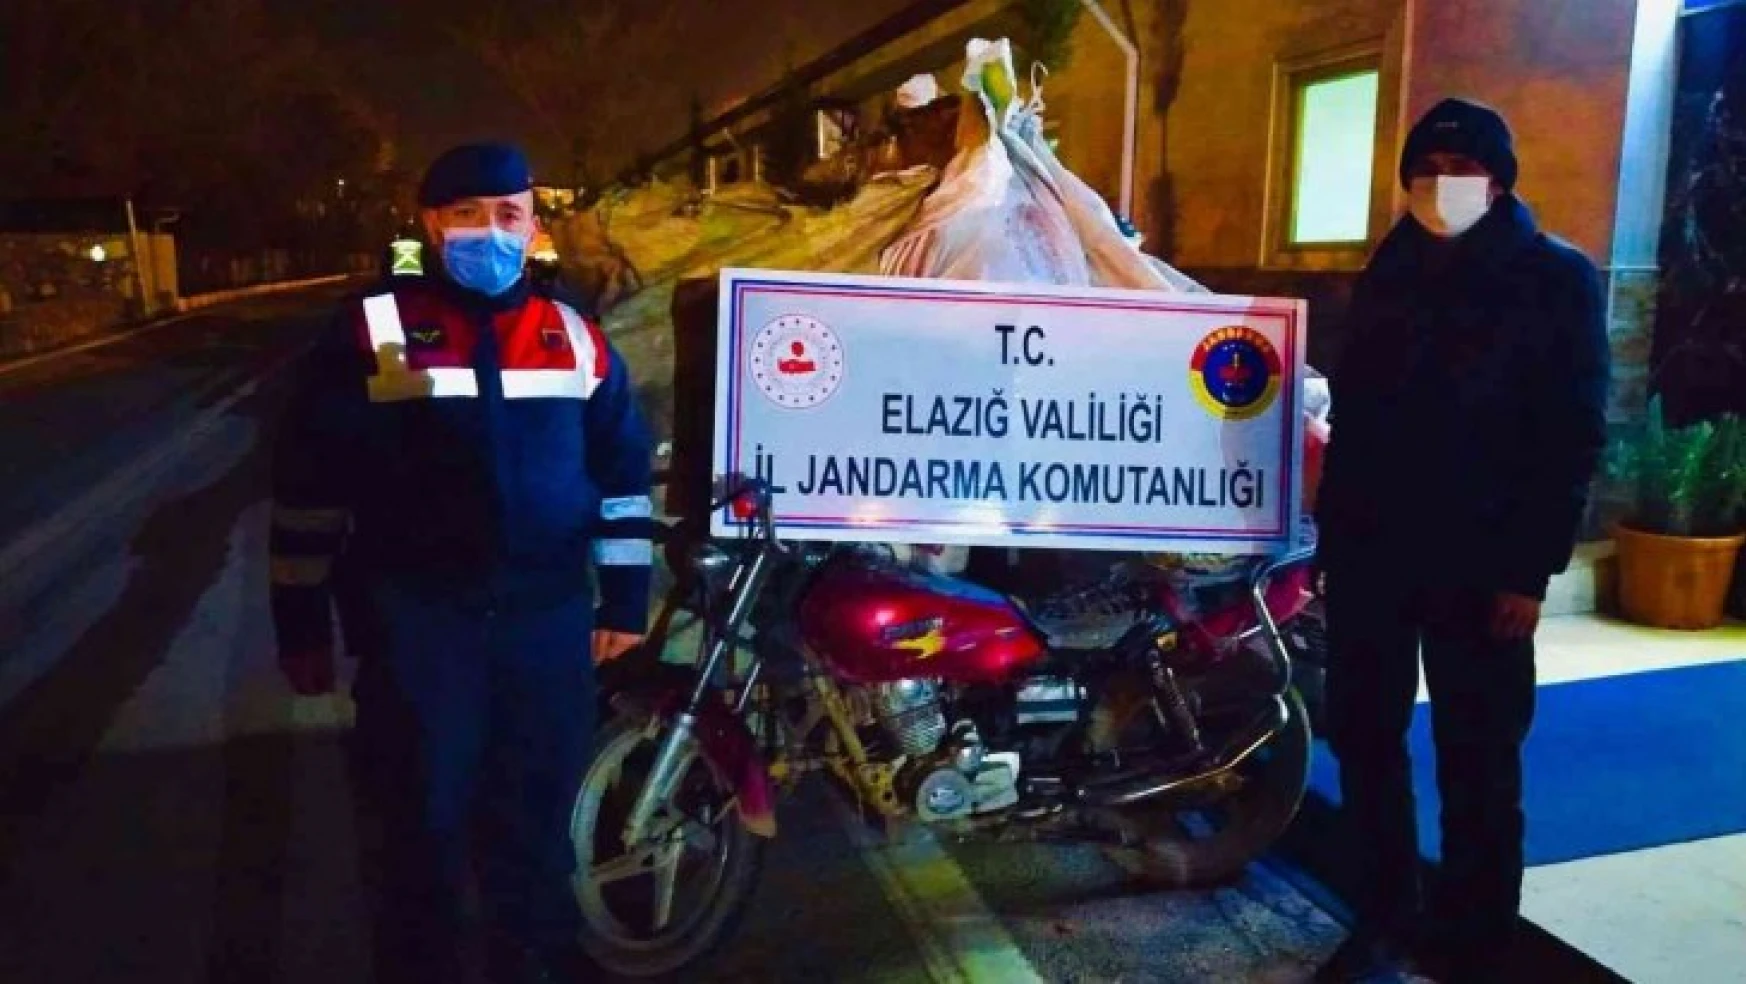 Elazığ'da jandarma ekipleri, hırsızlara göz açtırmıyor